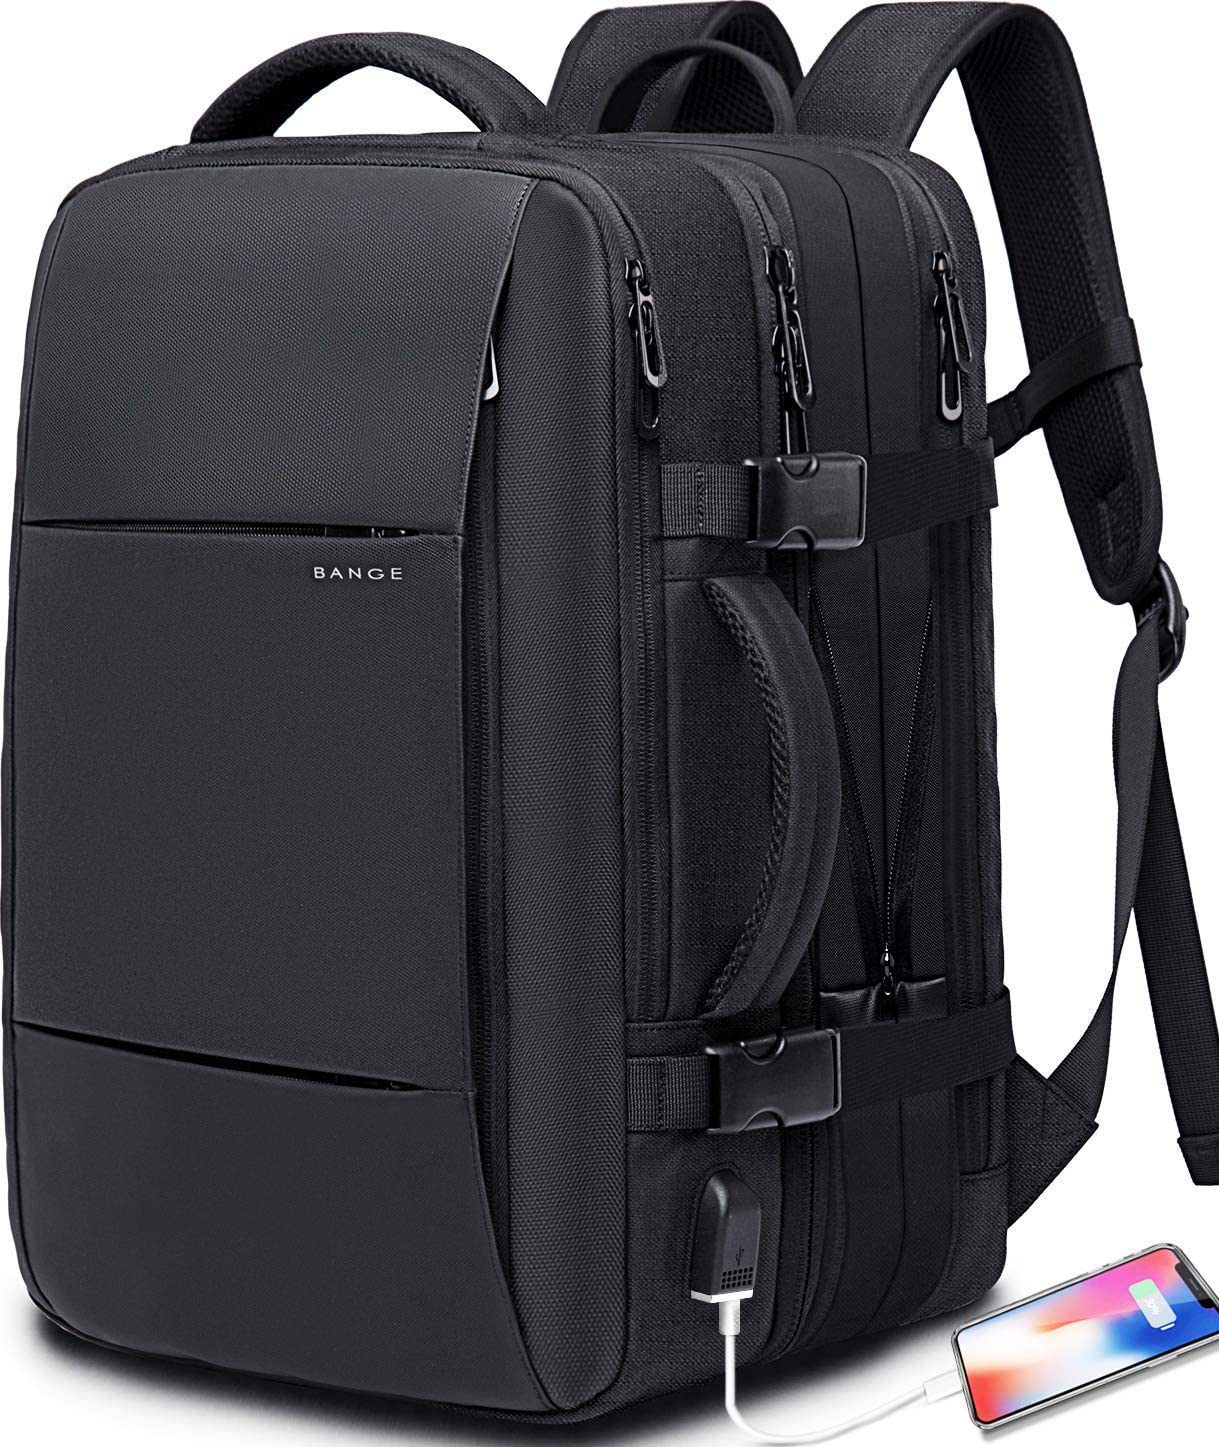 BANGE 35L Travel Backpack